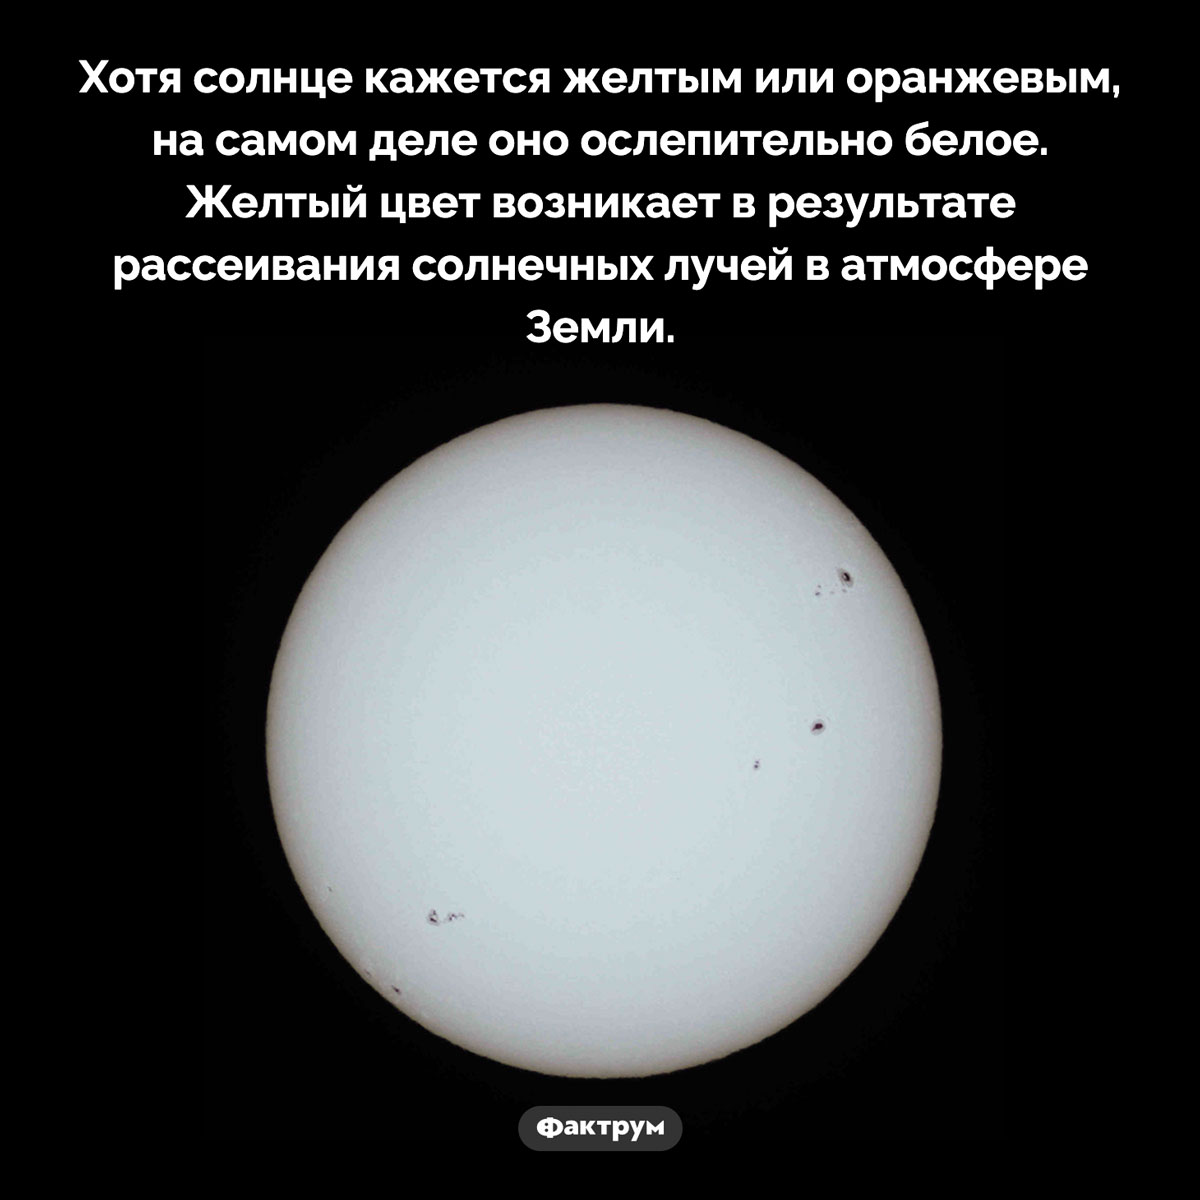 Почему солнце кажется желтым. Хотя солнце кажется желтым или оранжевым, на самом деле оно ослепительно белое. Желтый цвет возникает в результате рассеивания солнечных лучей в атмосфере Земли.